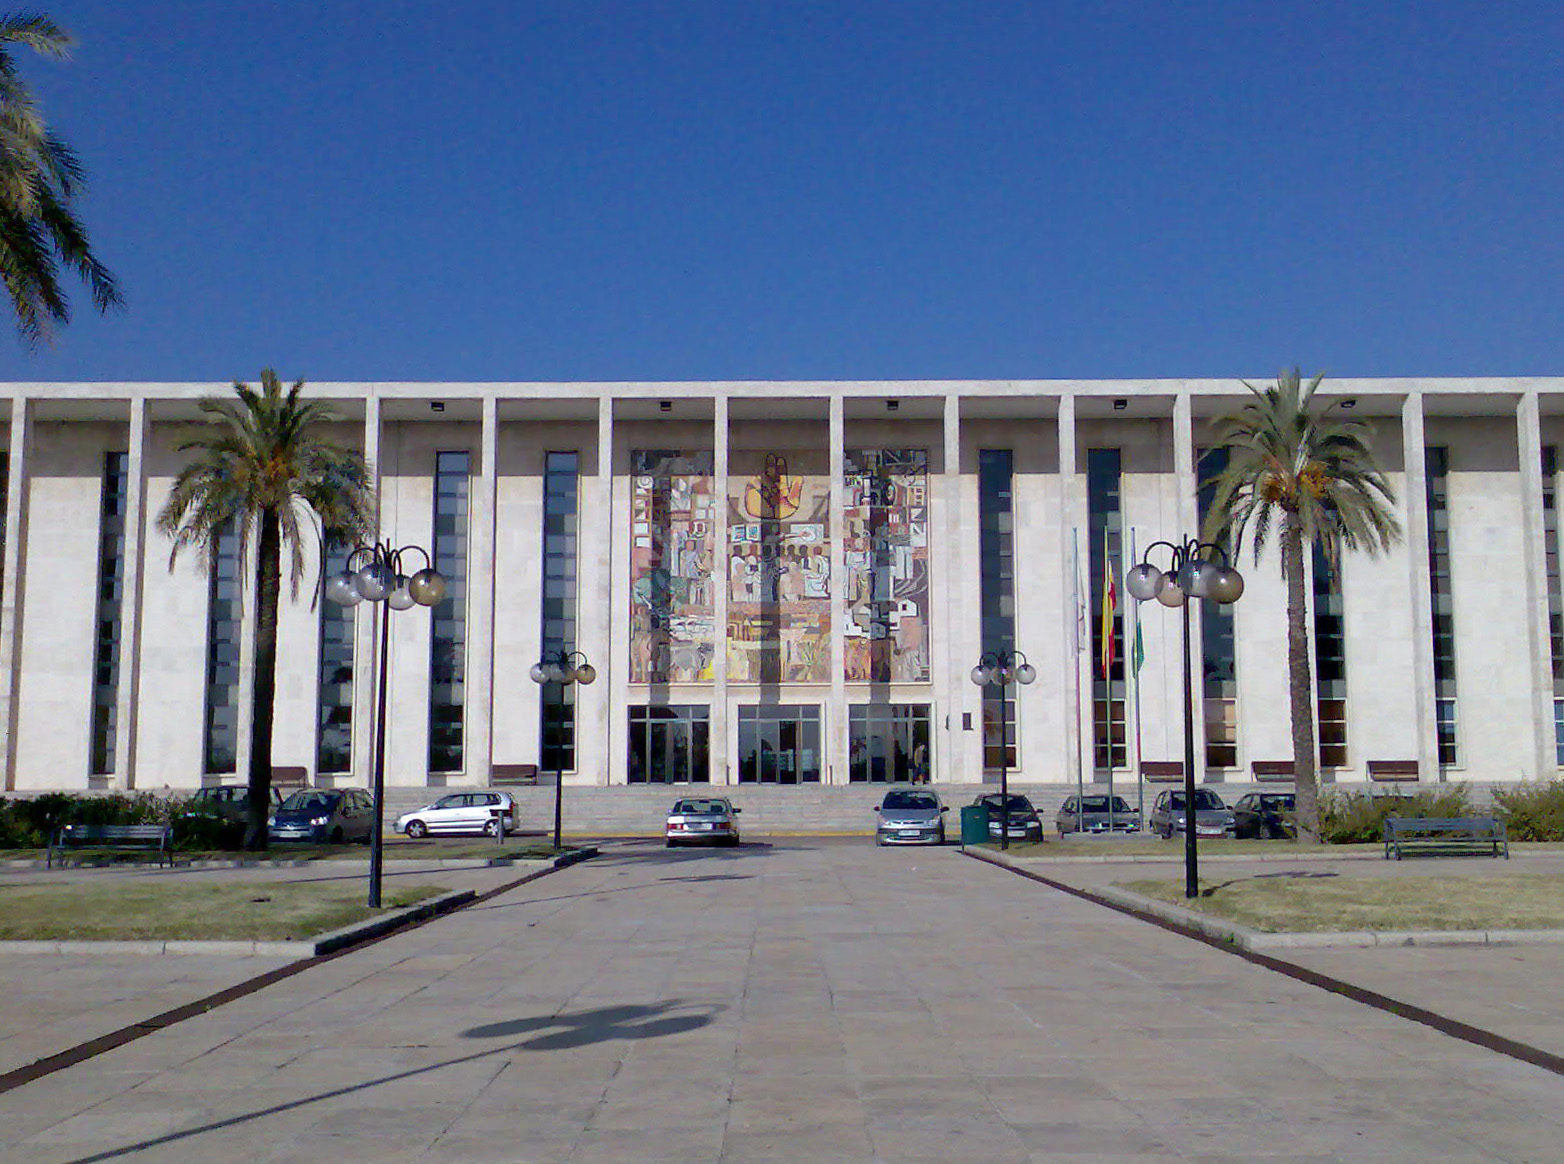 Antigua Universidad Laboral de Córdoba (Rabanales)